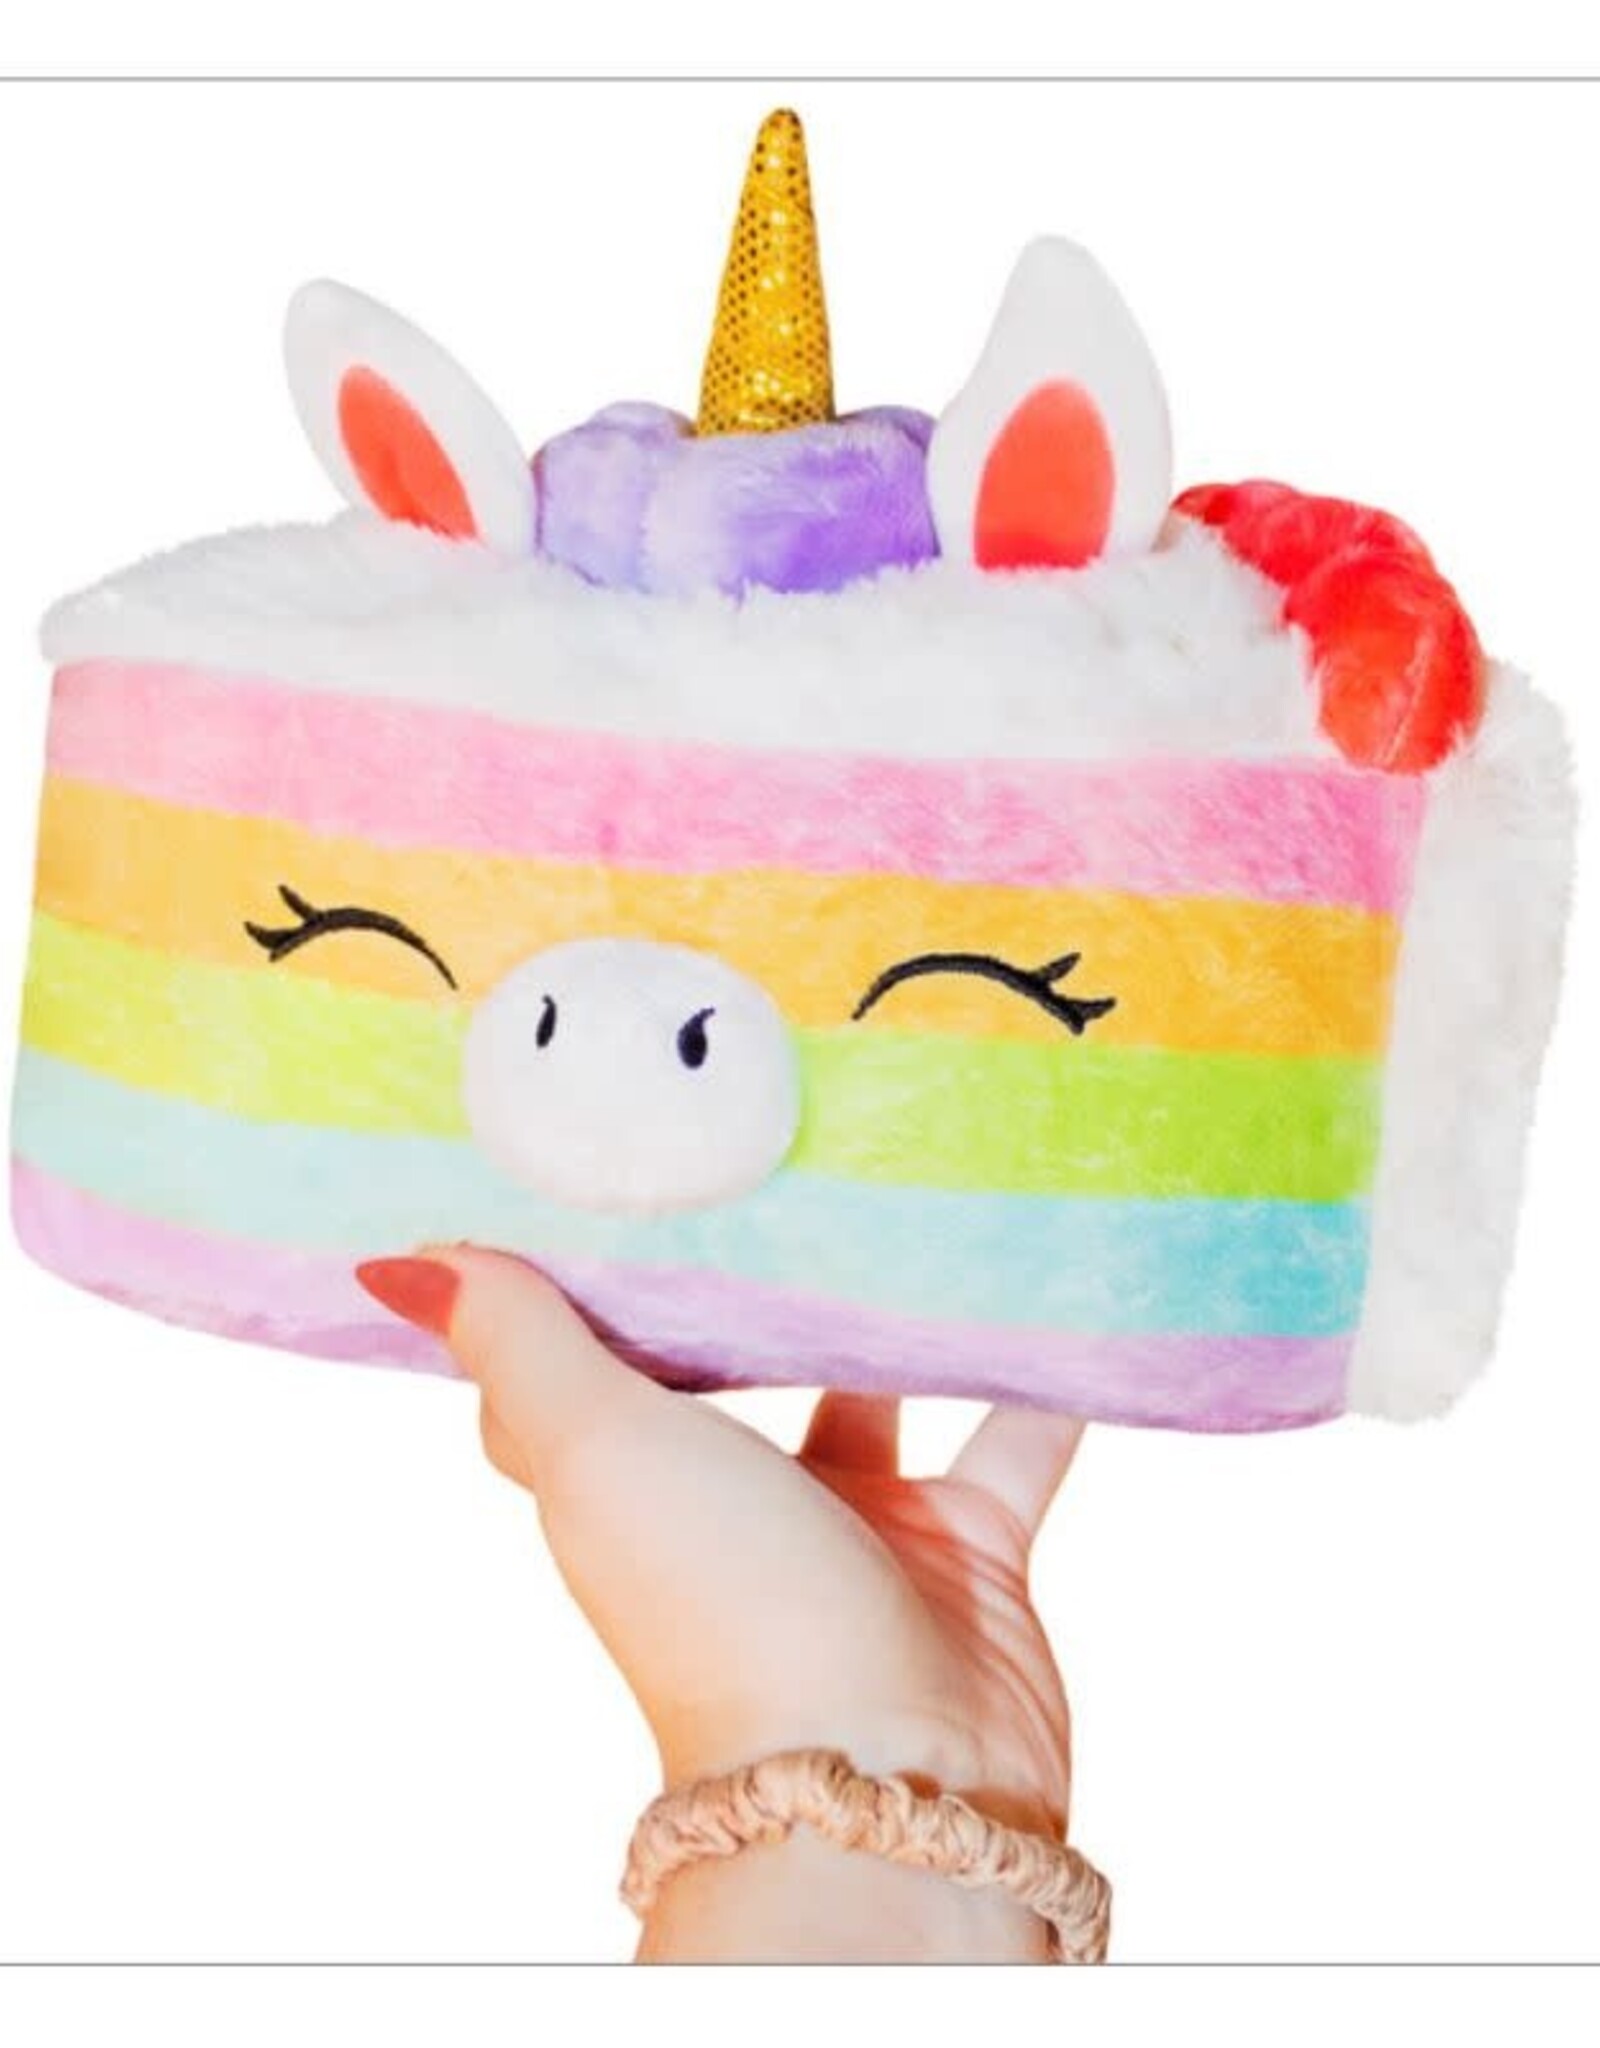 Squishable Mini Squishable: Unicorn Cake